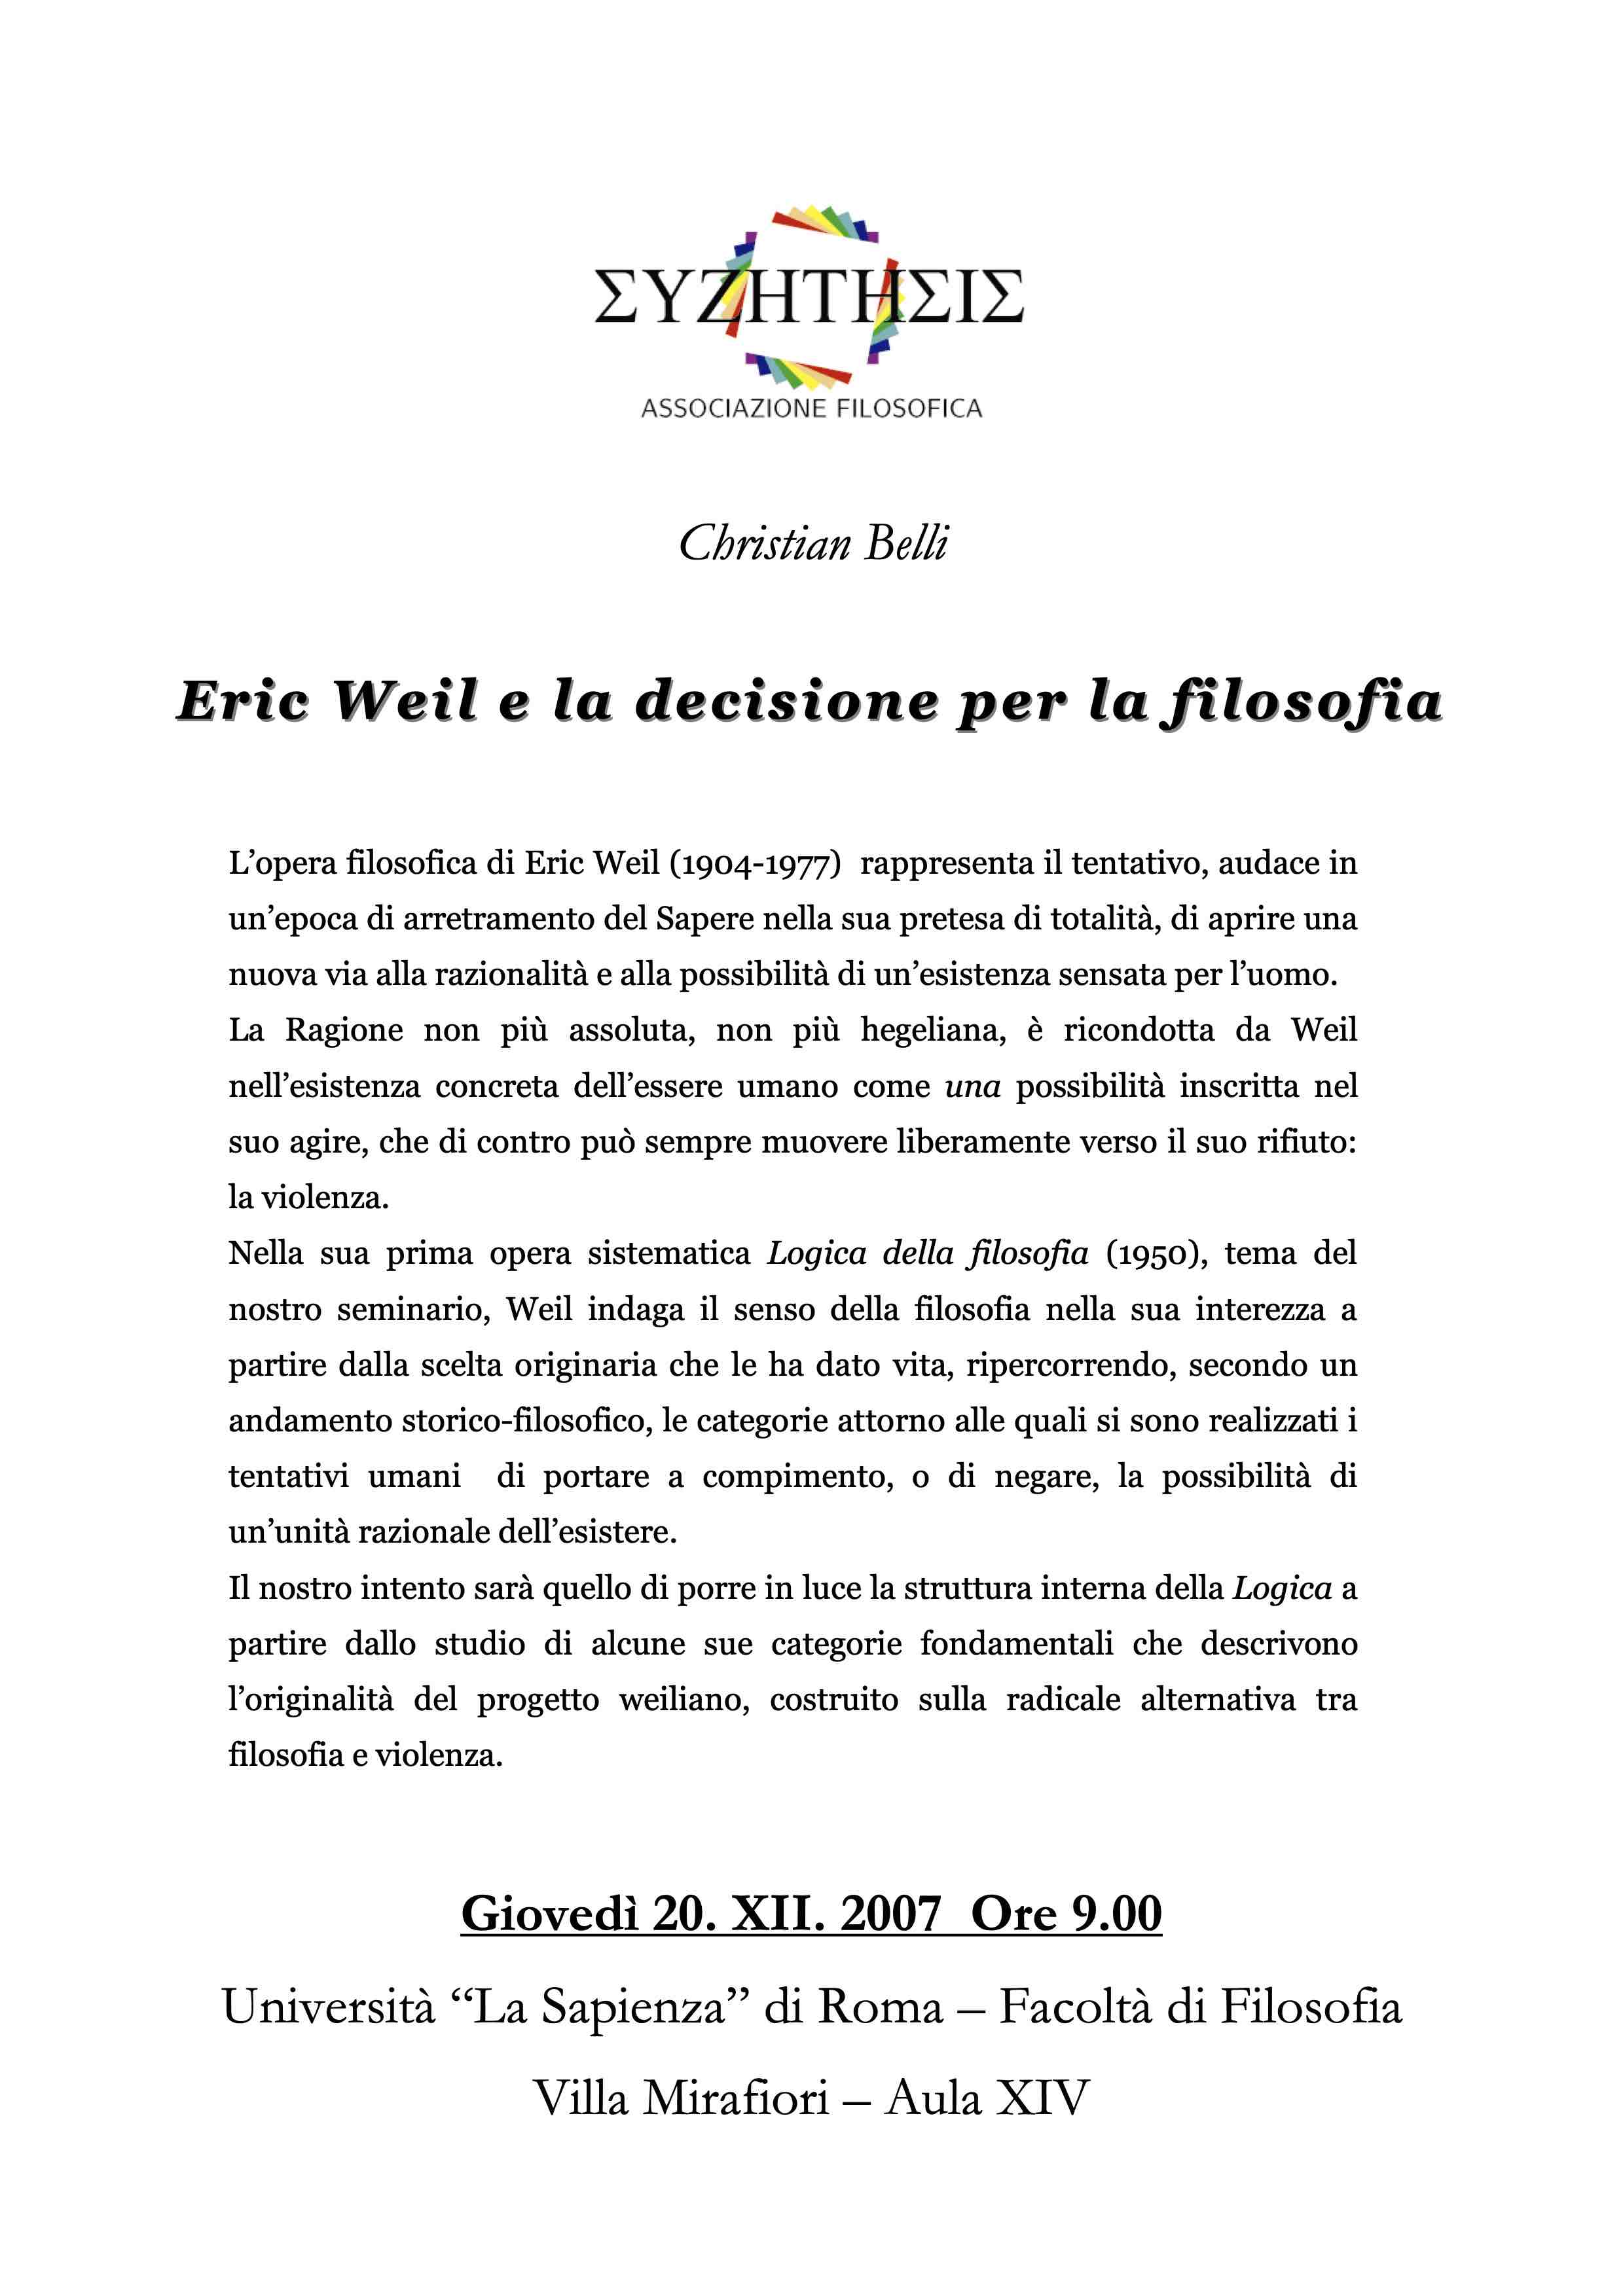 Eric Weil e la decisione per la filosofia